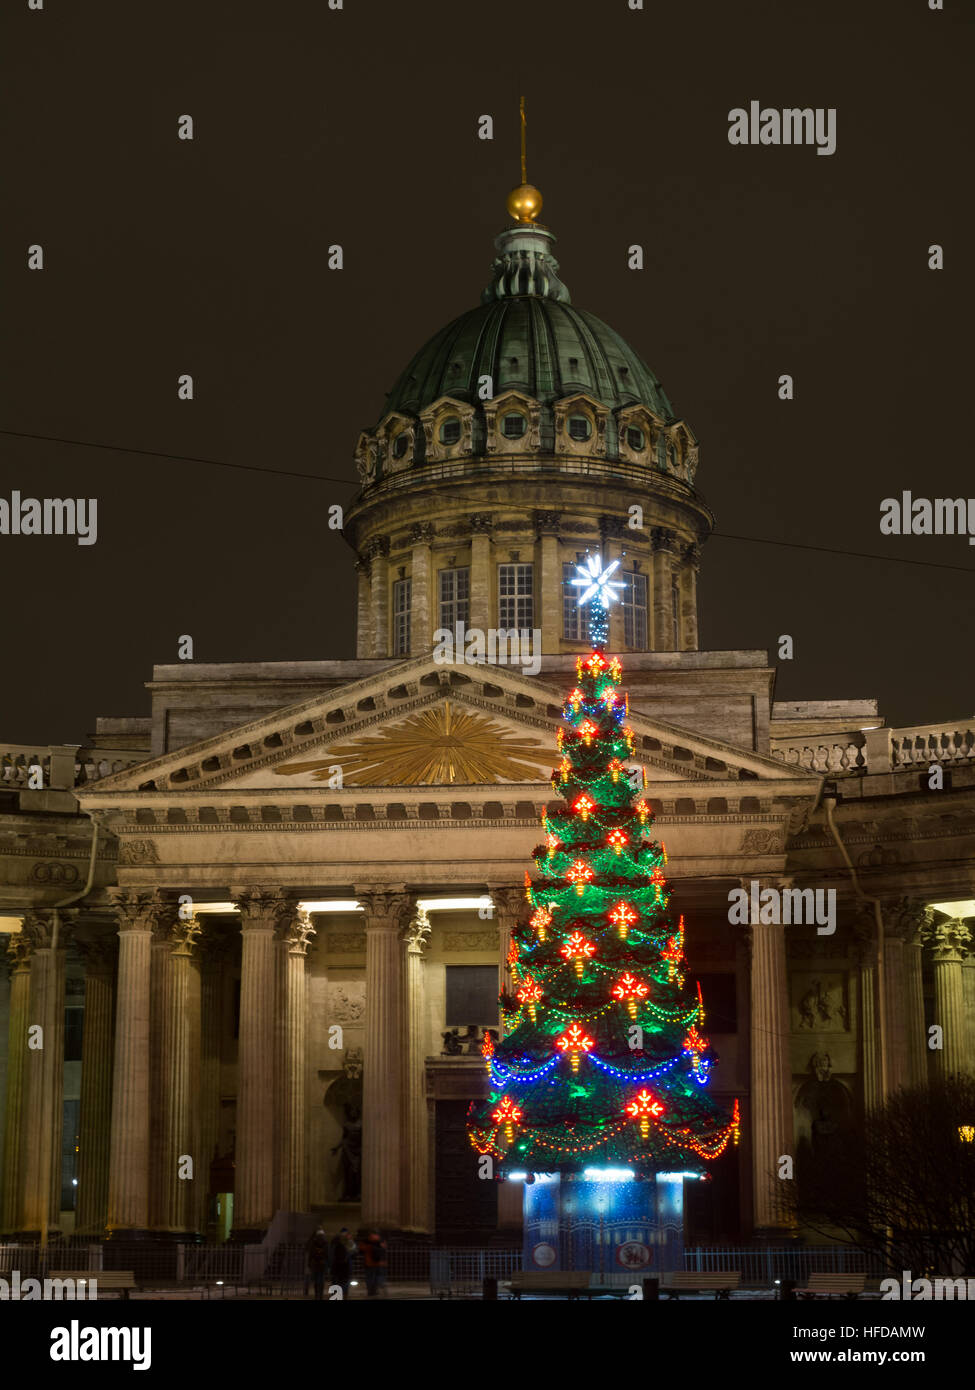 San Petersburgo, Rusia - Diciembre 22, 2016: árbol de navidad de la ciudad decoradas con una decoración colorida, cerca de la Catedral de Kazan en la noche illuminatio Foto de stock